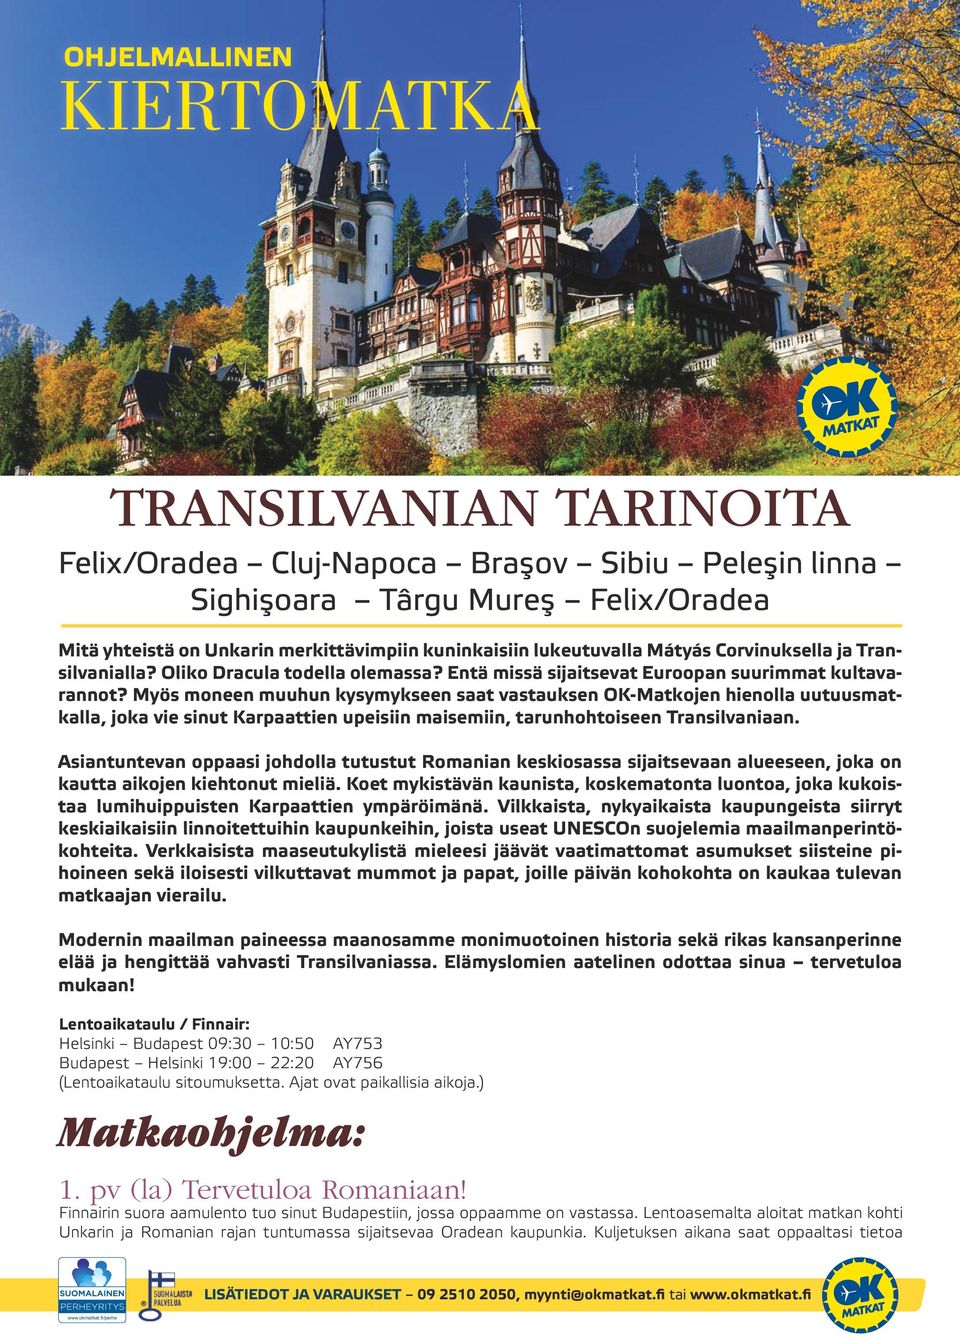 Myös moneen muuhun kysymykseen saat vastauksen OK-Matkojen hienolla uutuusmatkalla, joka vie sinut Karpaattien upeisiin maisemiin, tarunhohtoiseen Transilvaniaan.